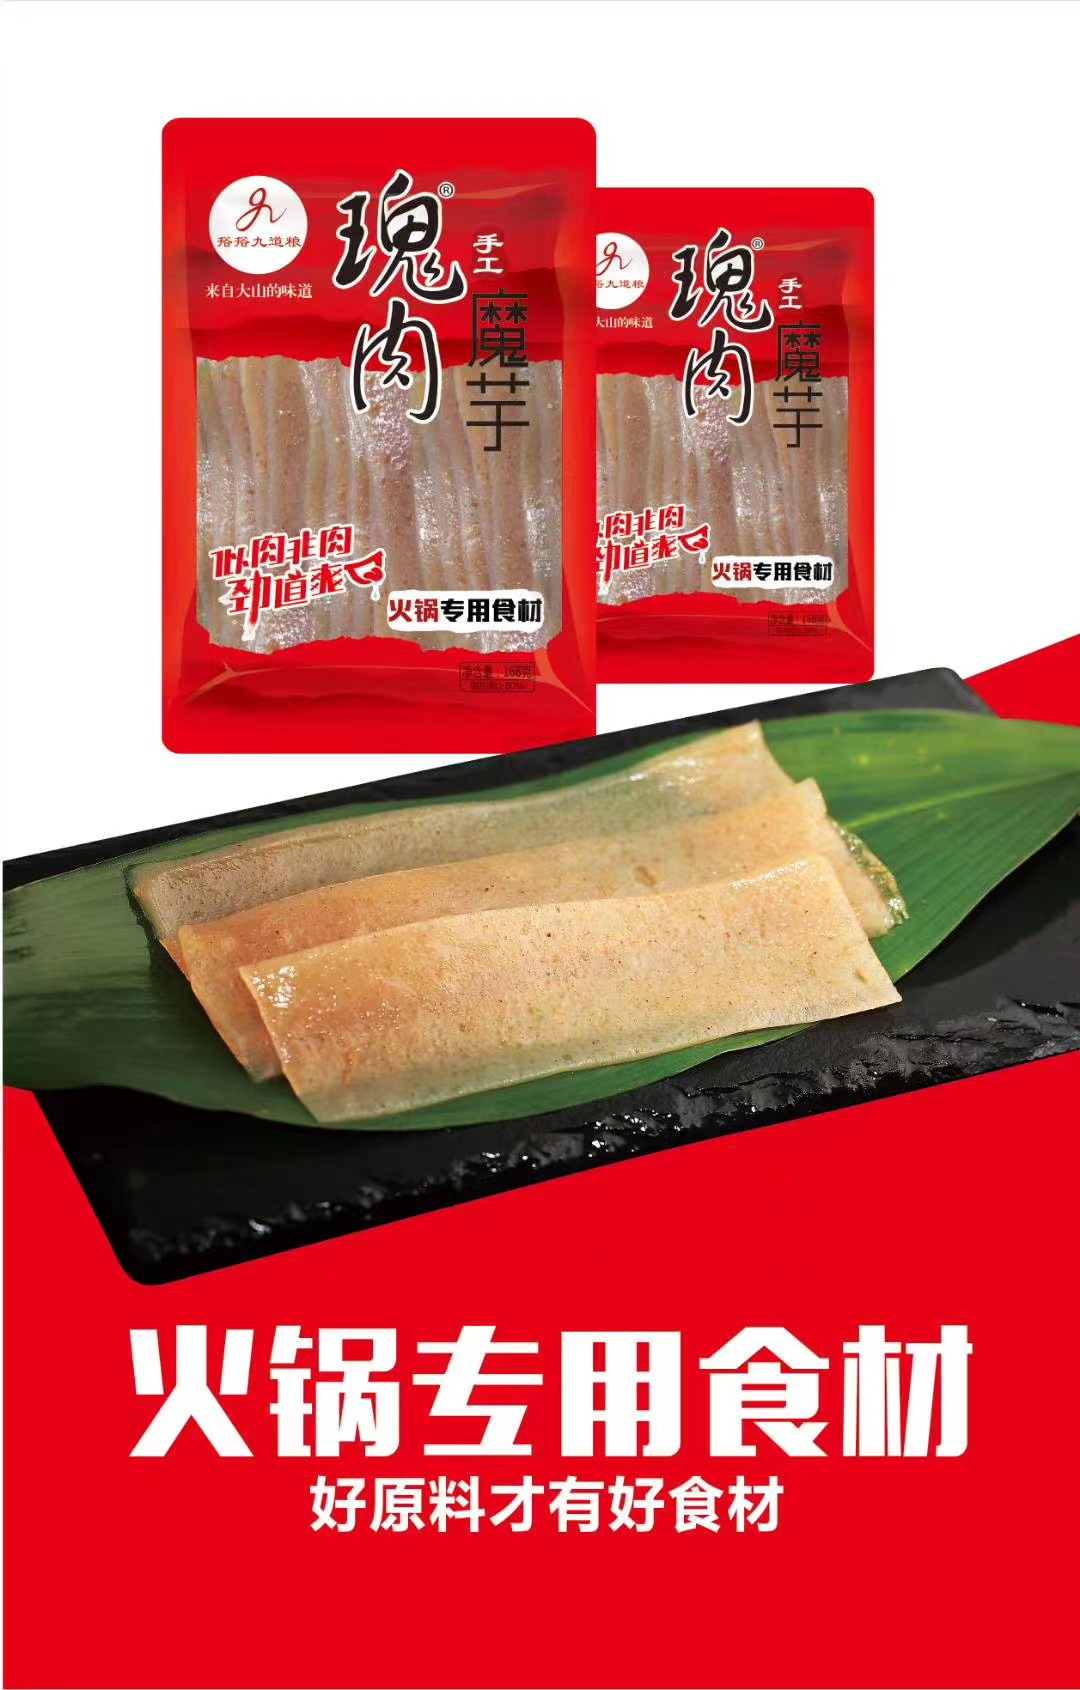 串串火锅食材 瑰肉魔芋火锅版168克 每袋